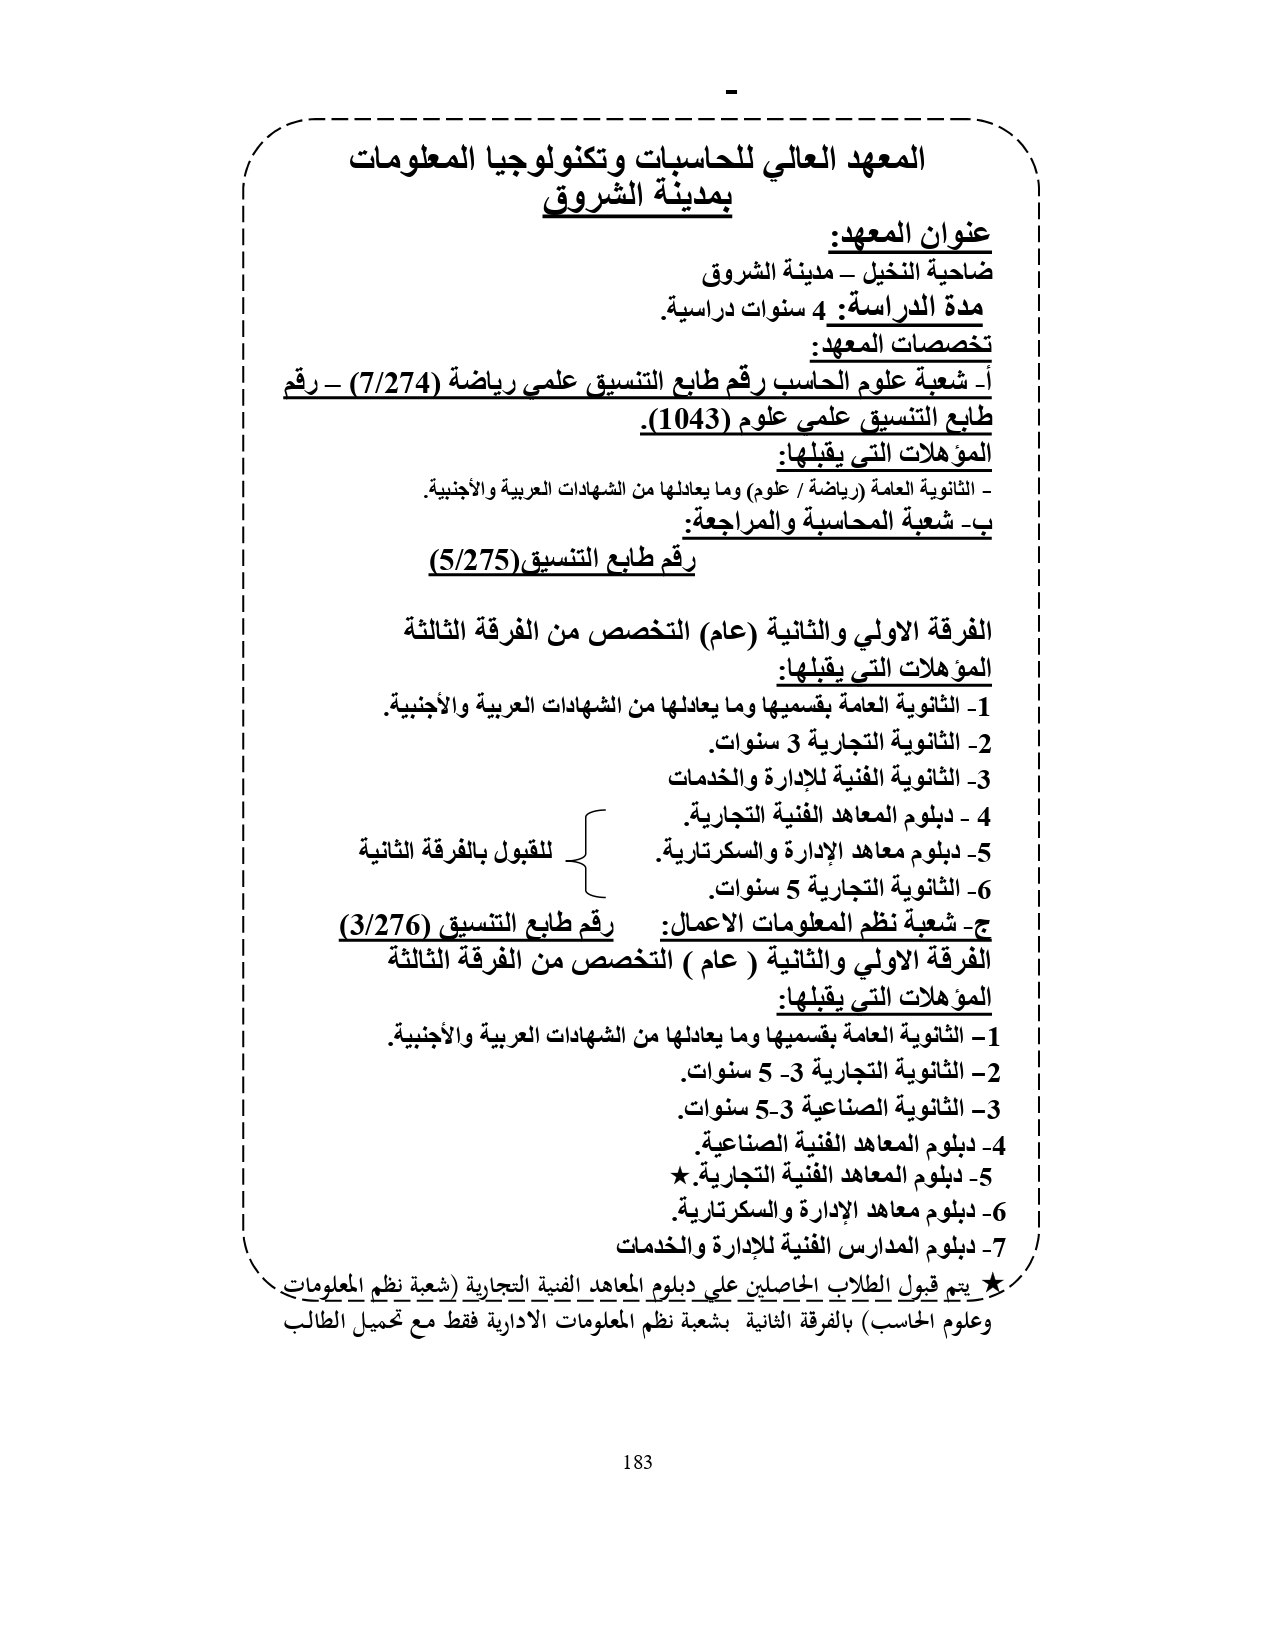 المعهد العالي للحاسبات وتكنولوجيا المعلومات بمدينة الشروق «مصروفات ومعلومات»